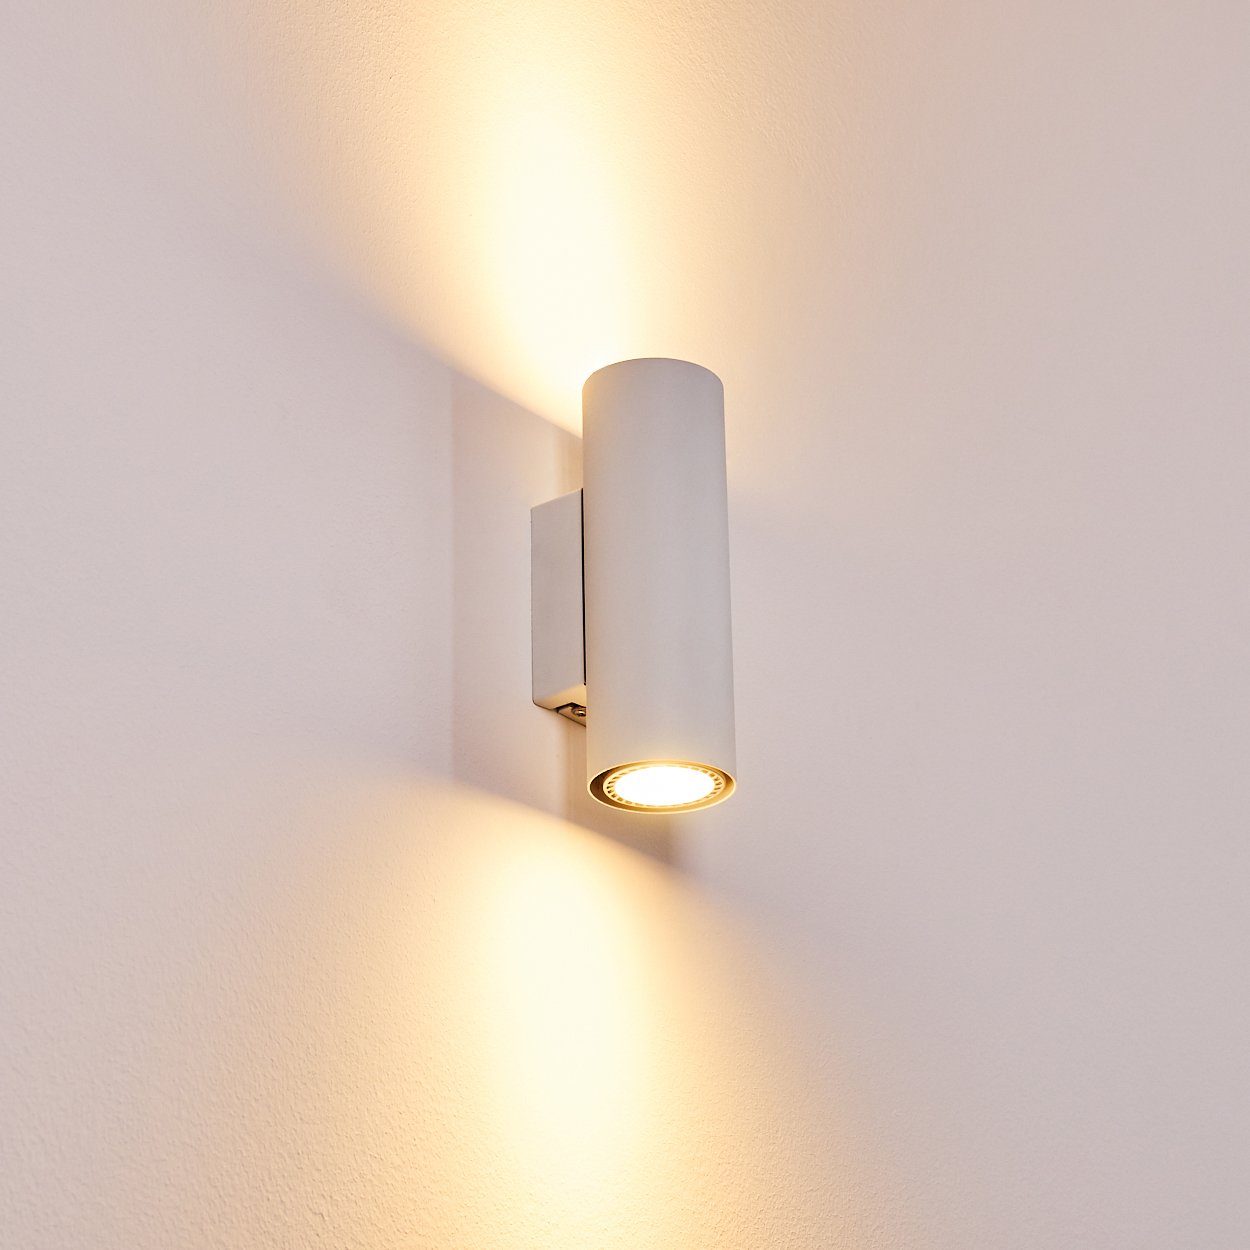 Flur Dielen Lampe LED Design Wand Strahler verstellbar Wohn Schlaf Raum Leuchten 